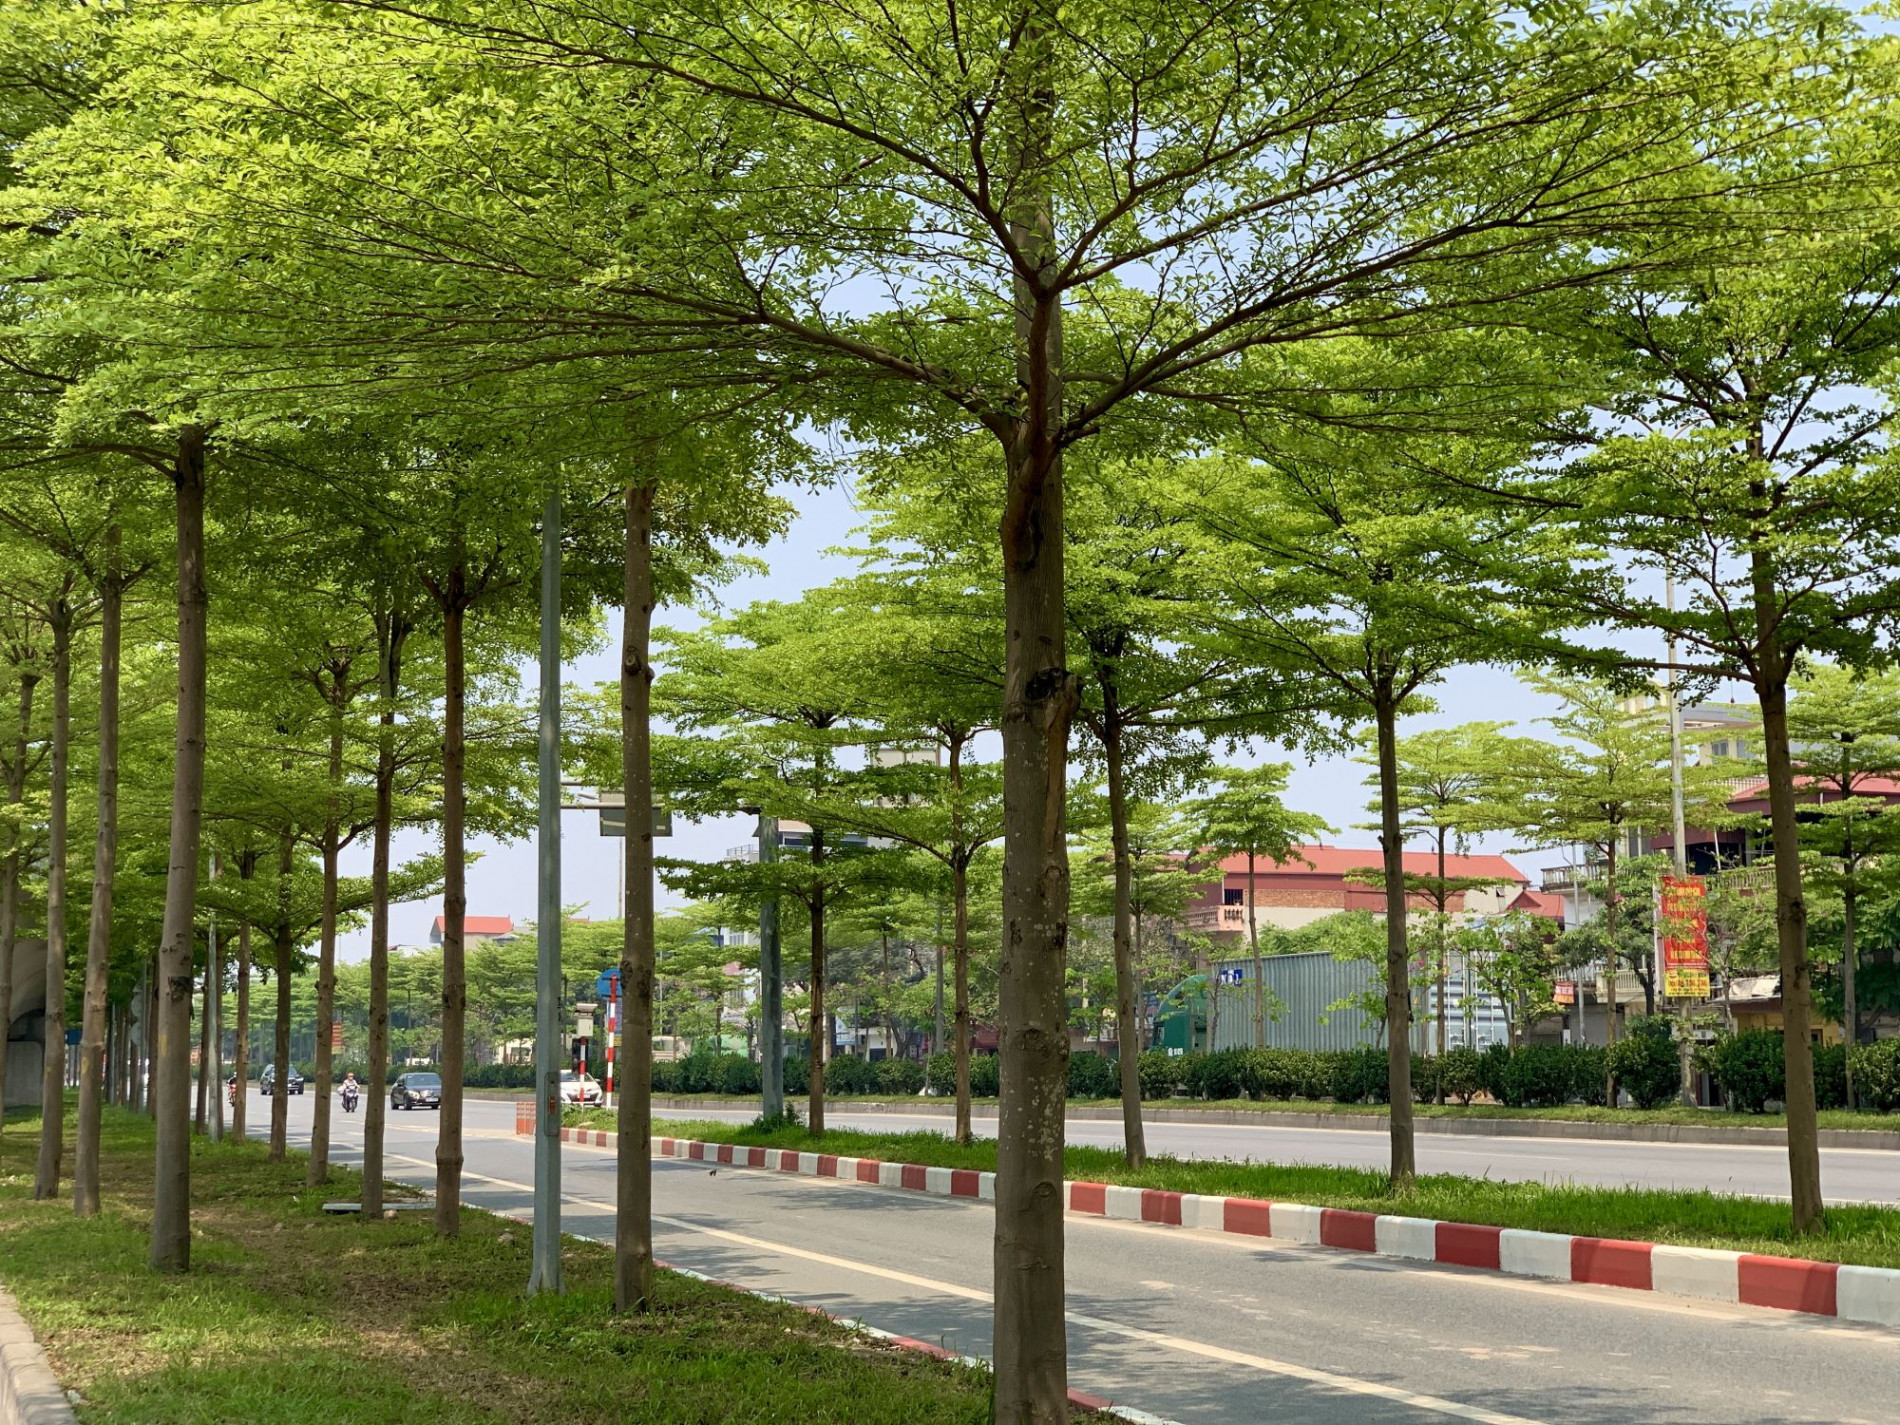 Hà Nội đang đẹp hơn nhờ quy hoạch những con đường xanh mát